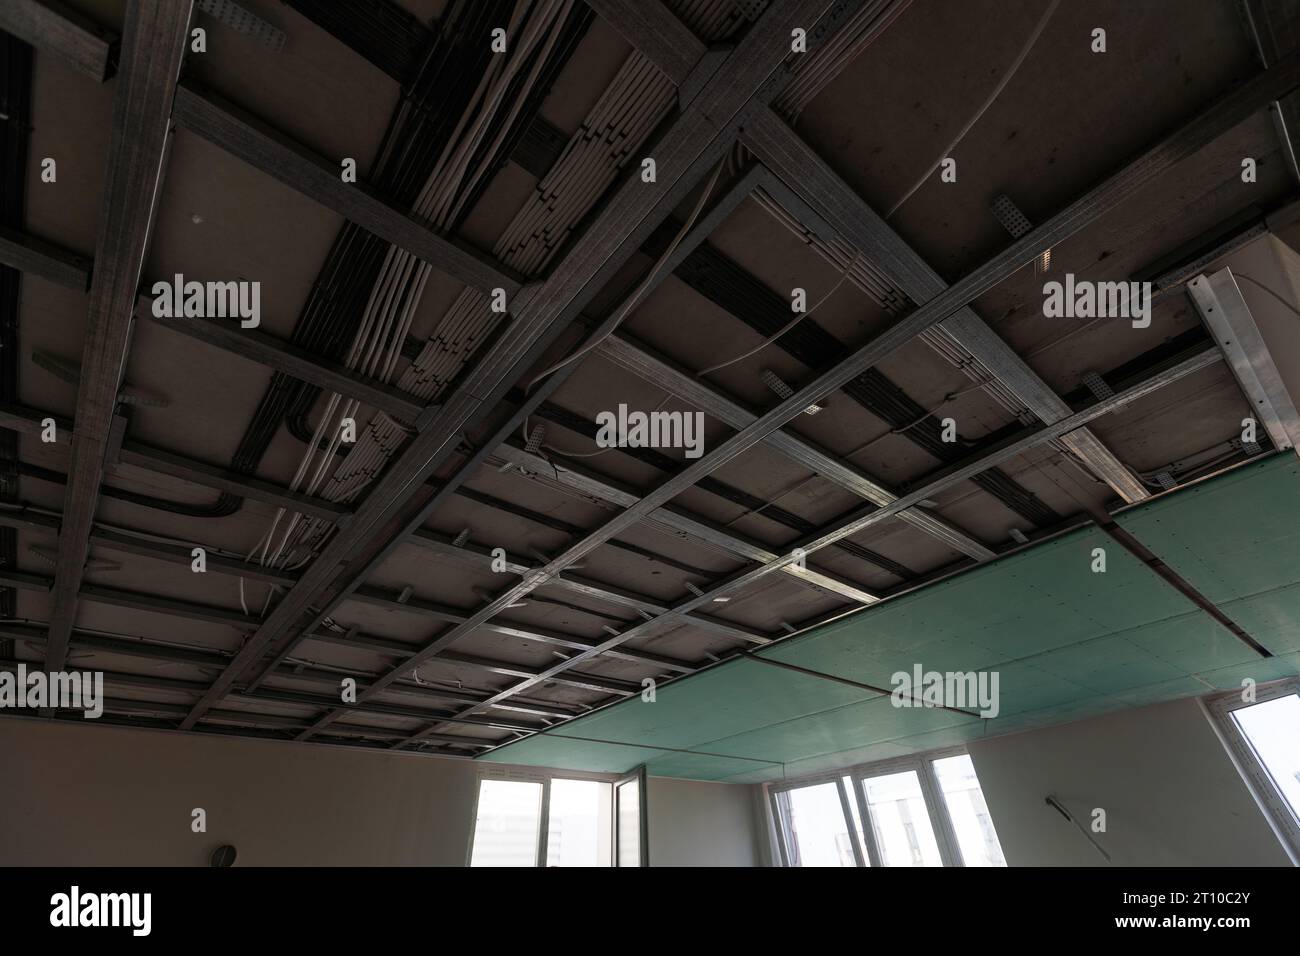 Le cadre métallique du plafond, isolation phonique, en cours de réparation d'un appartement Banque D'Images